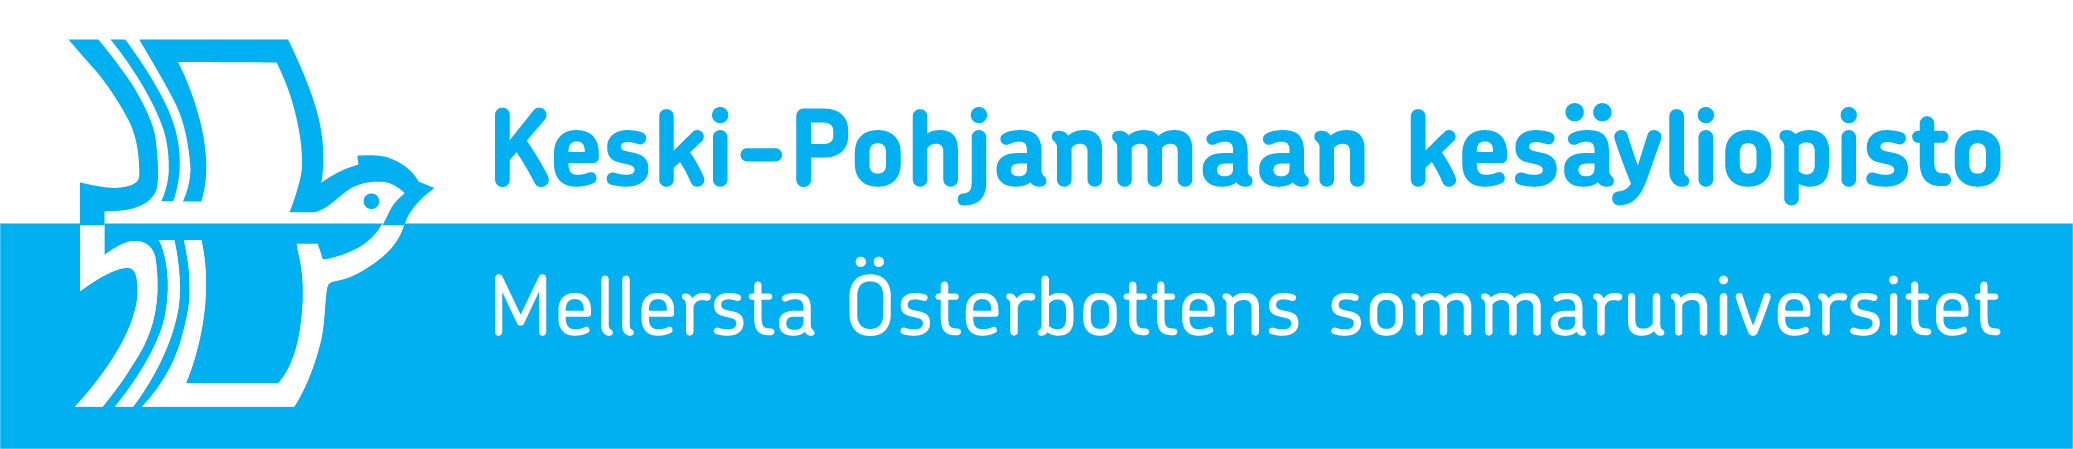 Keski_Pohjanmaan_kesayliopisto_logo2020